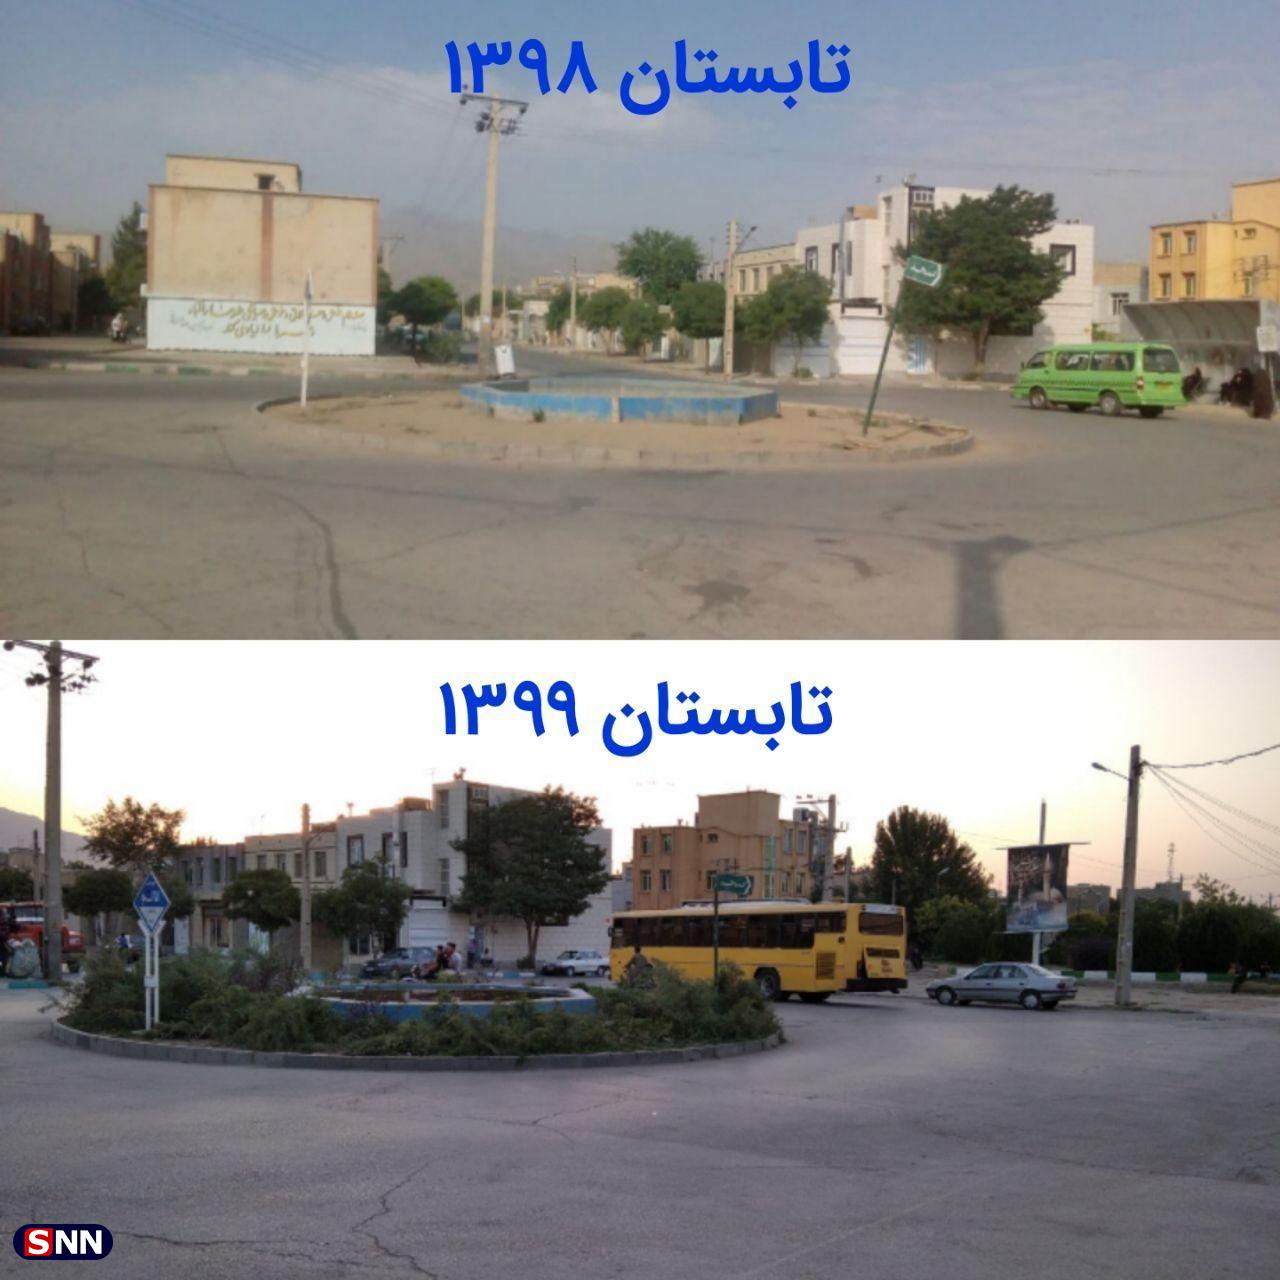 مشکلات مناطق محروم شهر همدان با پیگیری جریان دانشجویی حل شد + عکس